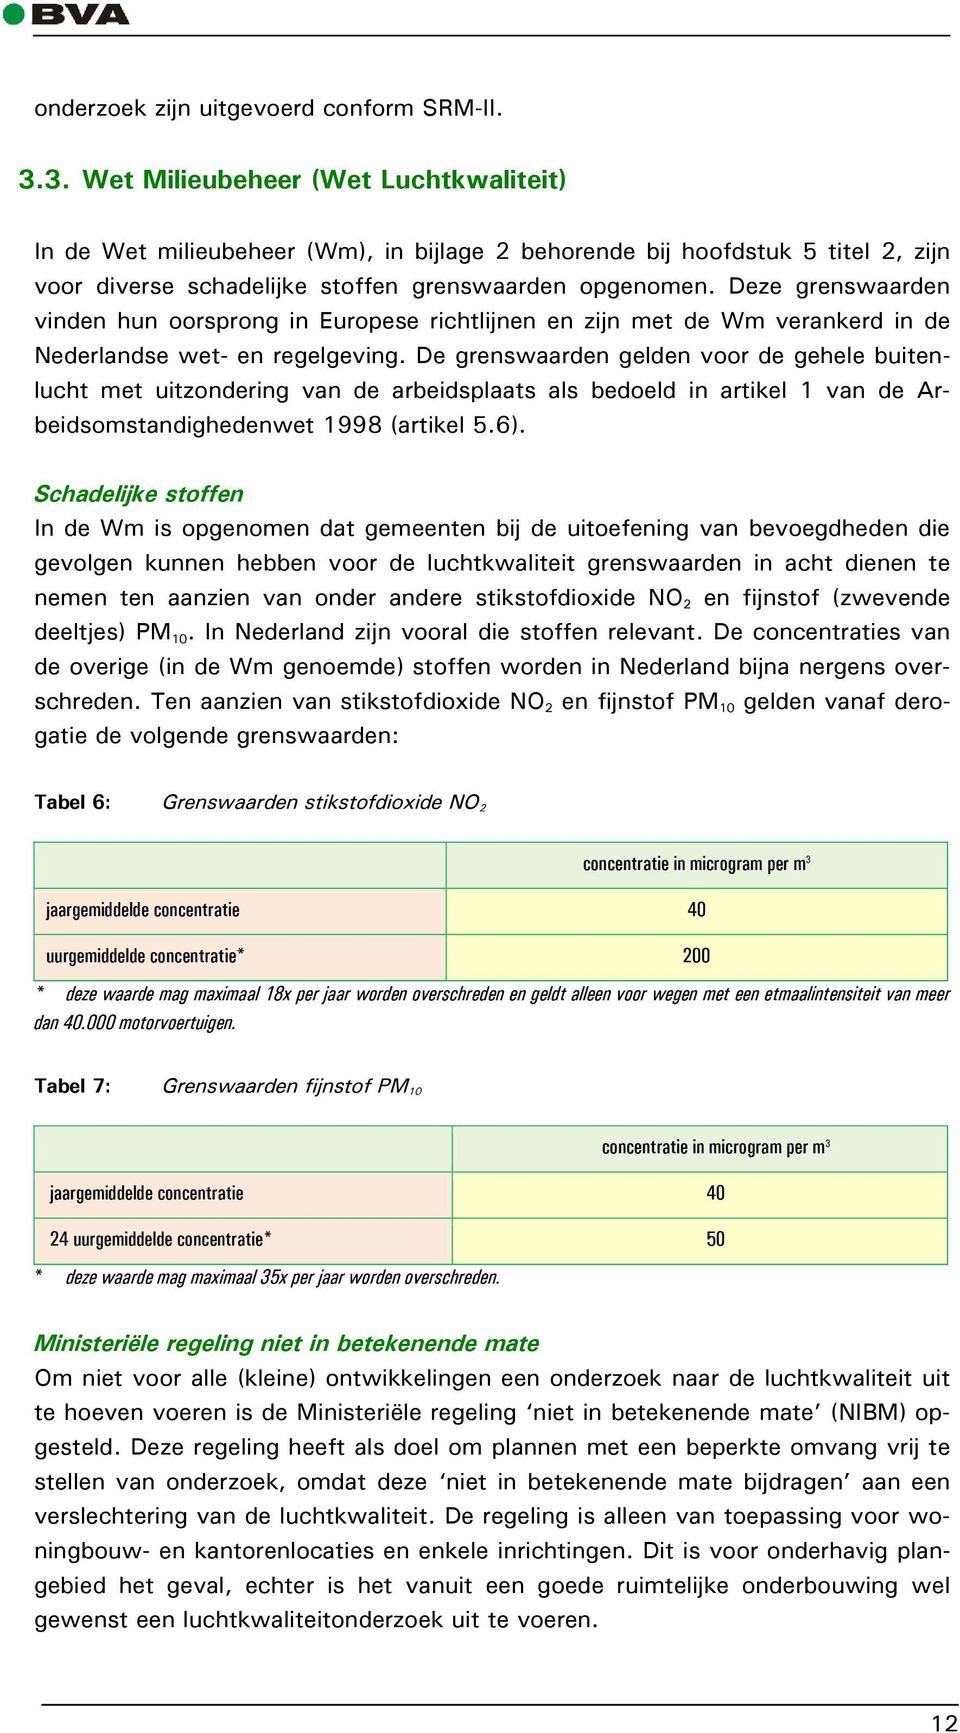 Deze grenswaarden vinden hun oorsprong in Europese richtlijnen en zijn met de Wm verankerd in de Nederlandse wet- en regelgeving.